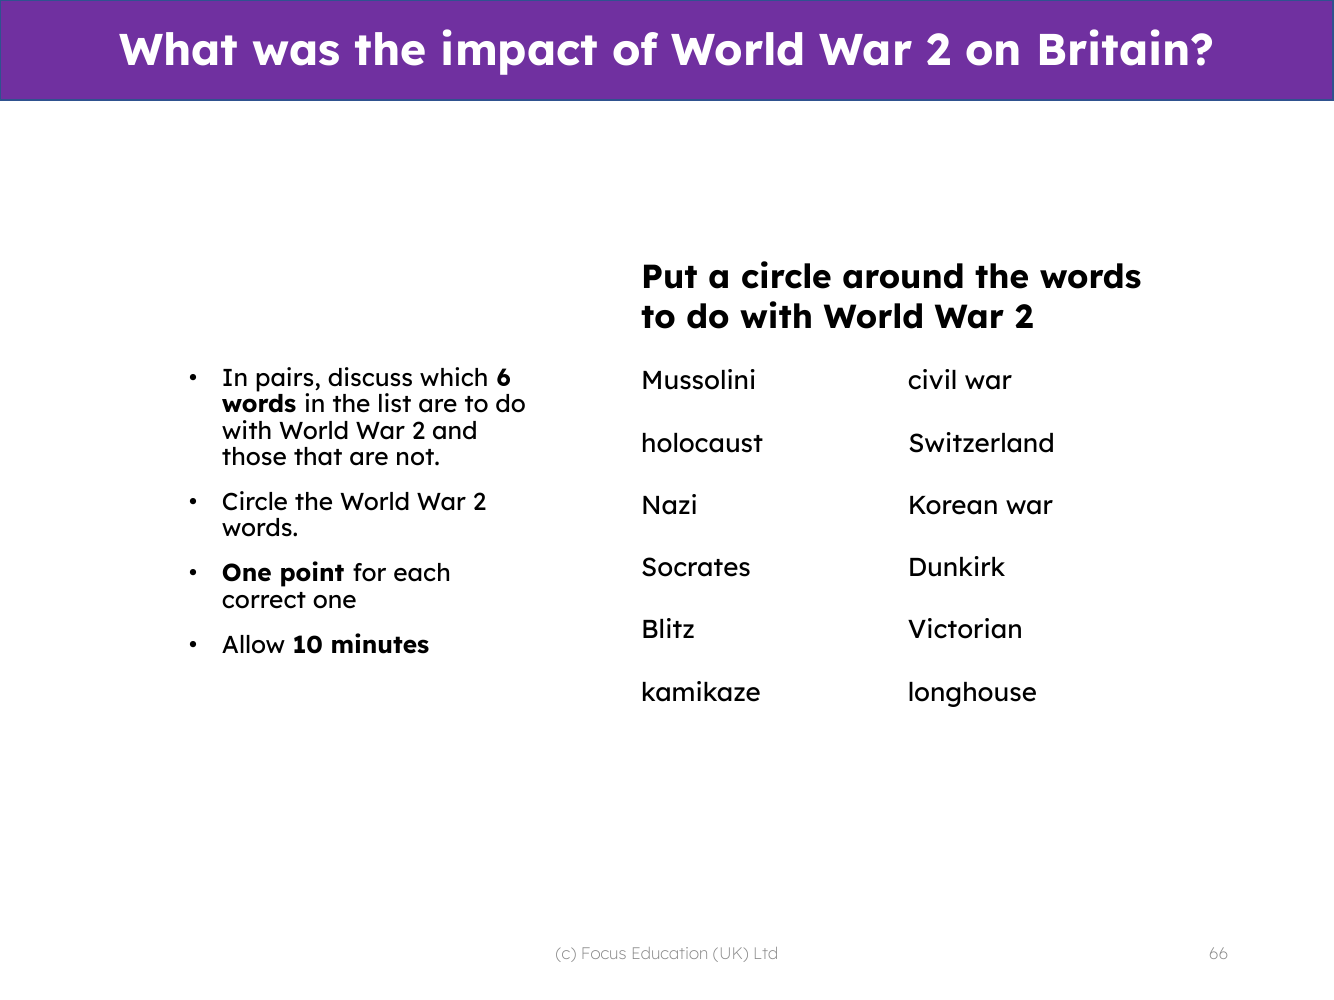 Word sorts - World War 2